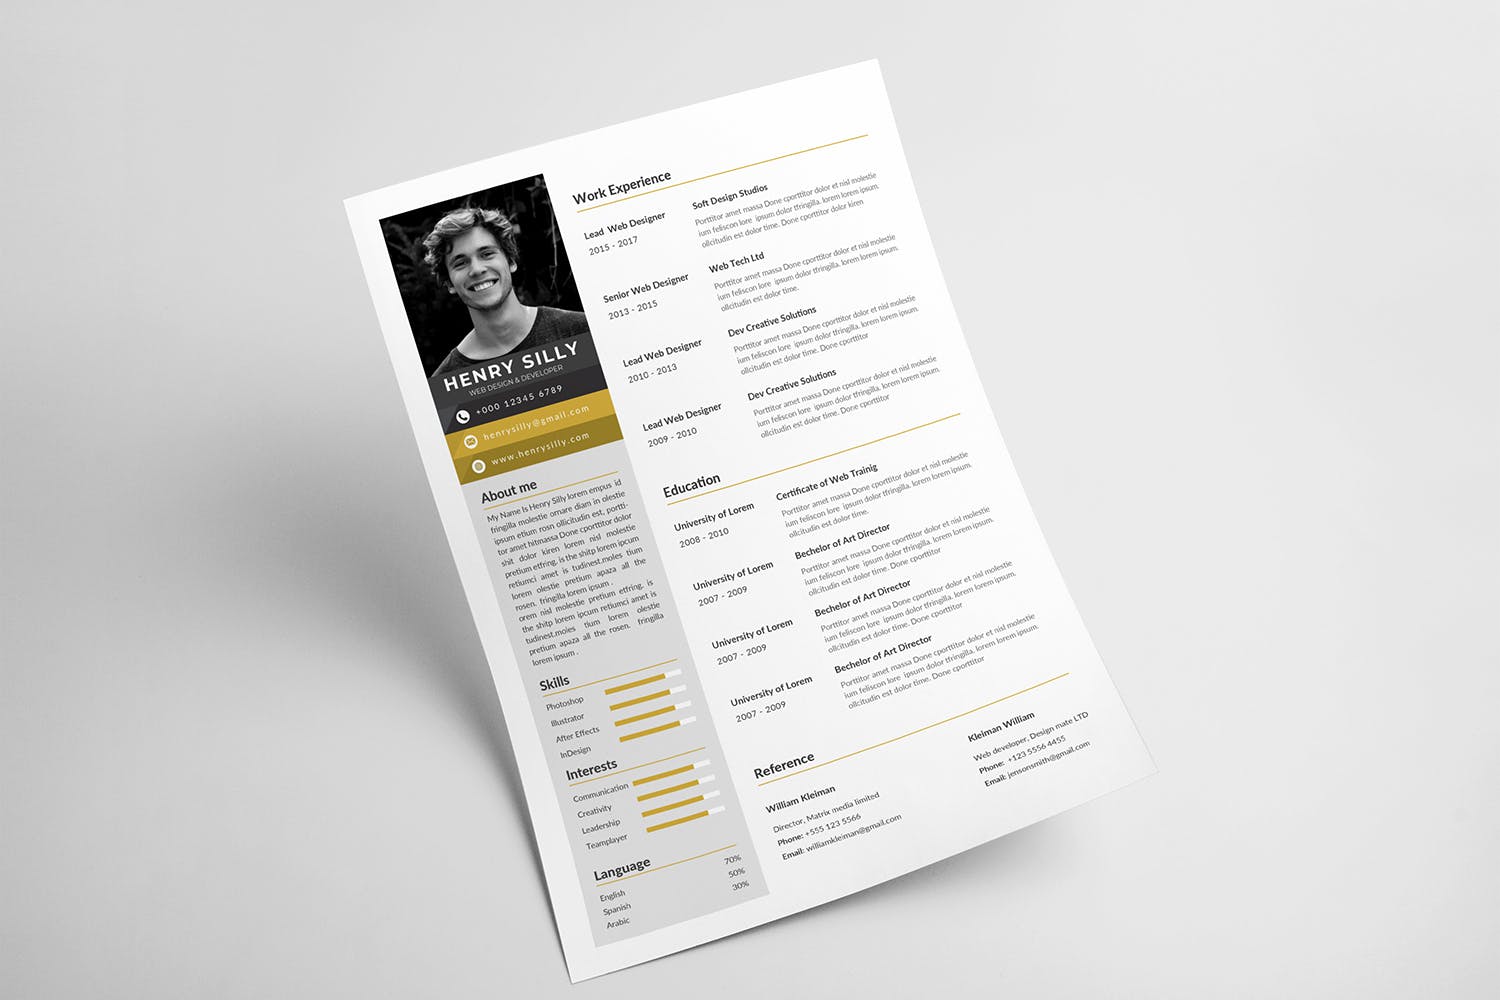 网站设计师&开发工程师简历/介绍信模板 CV Resume插图(2)